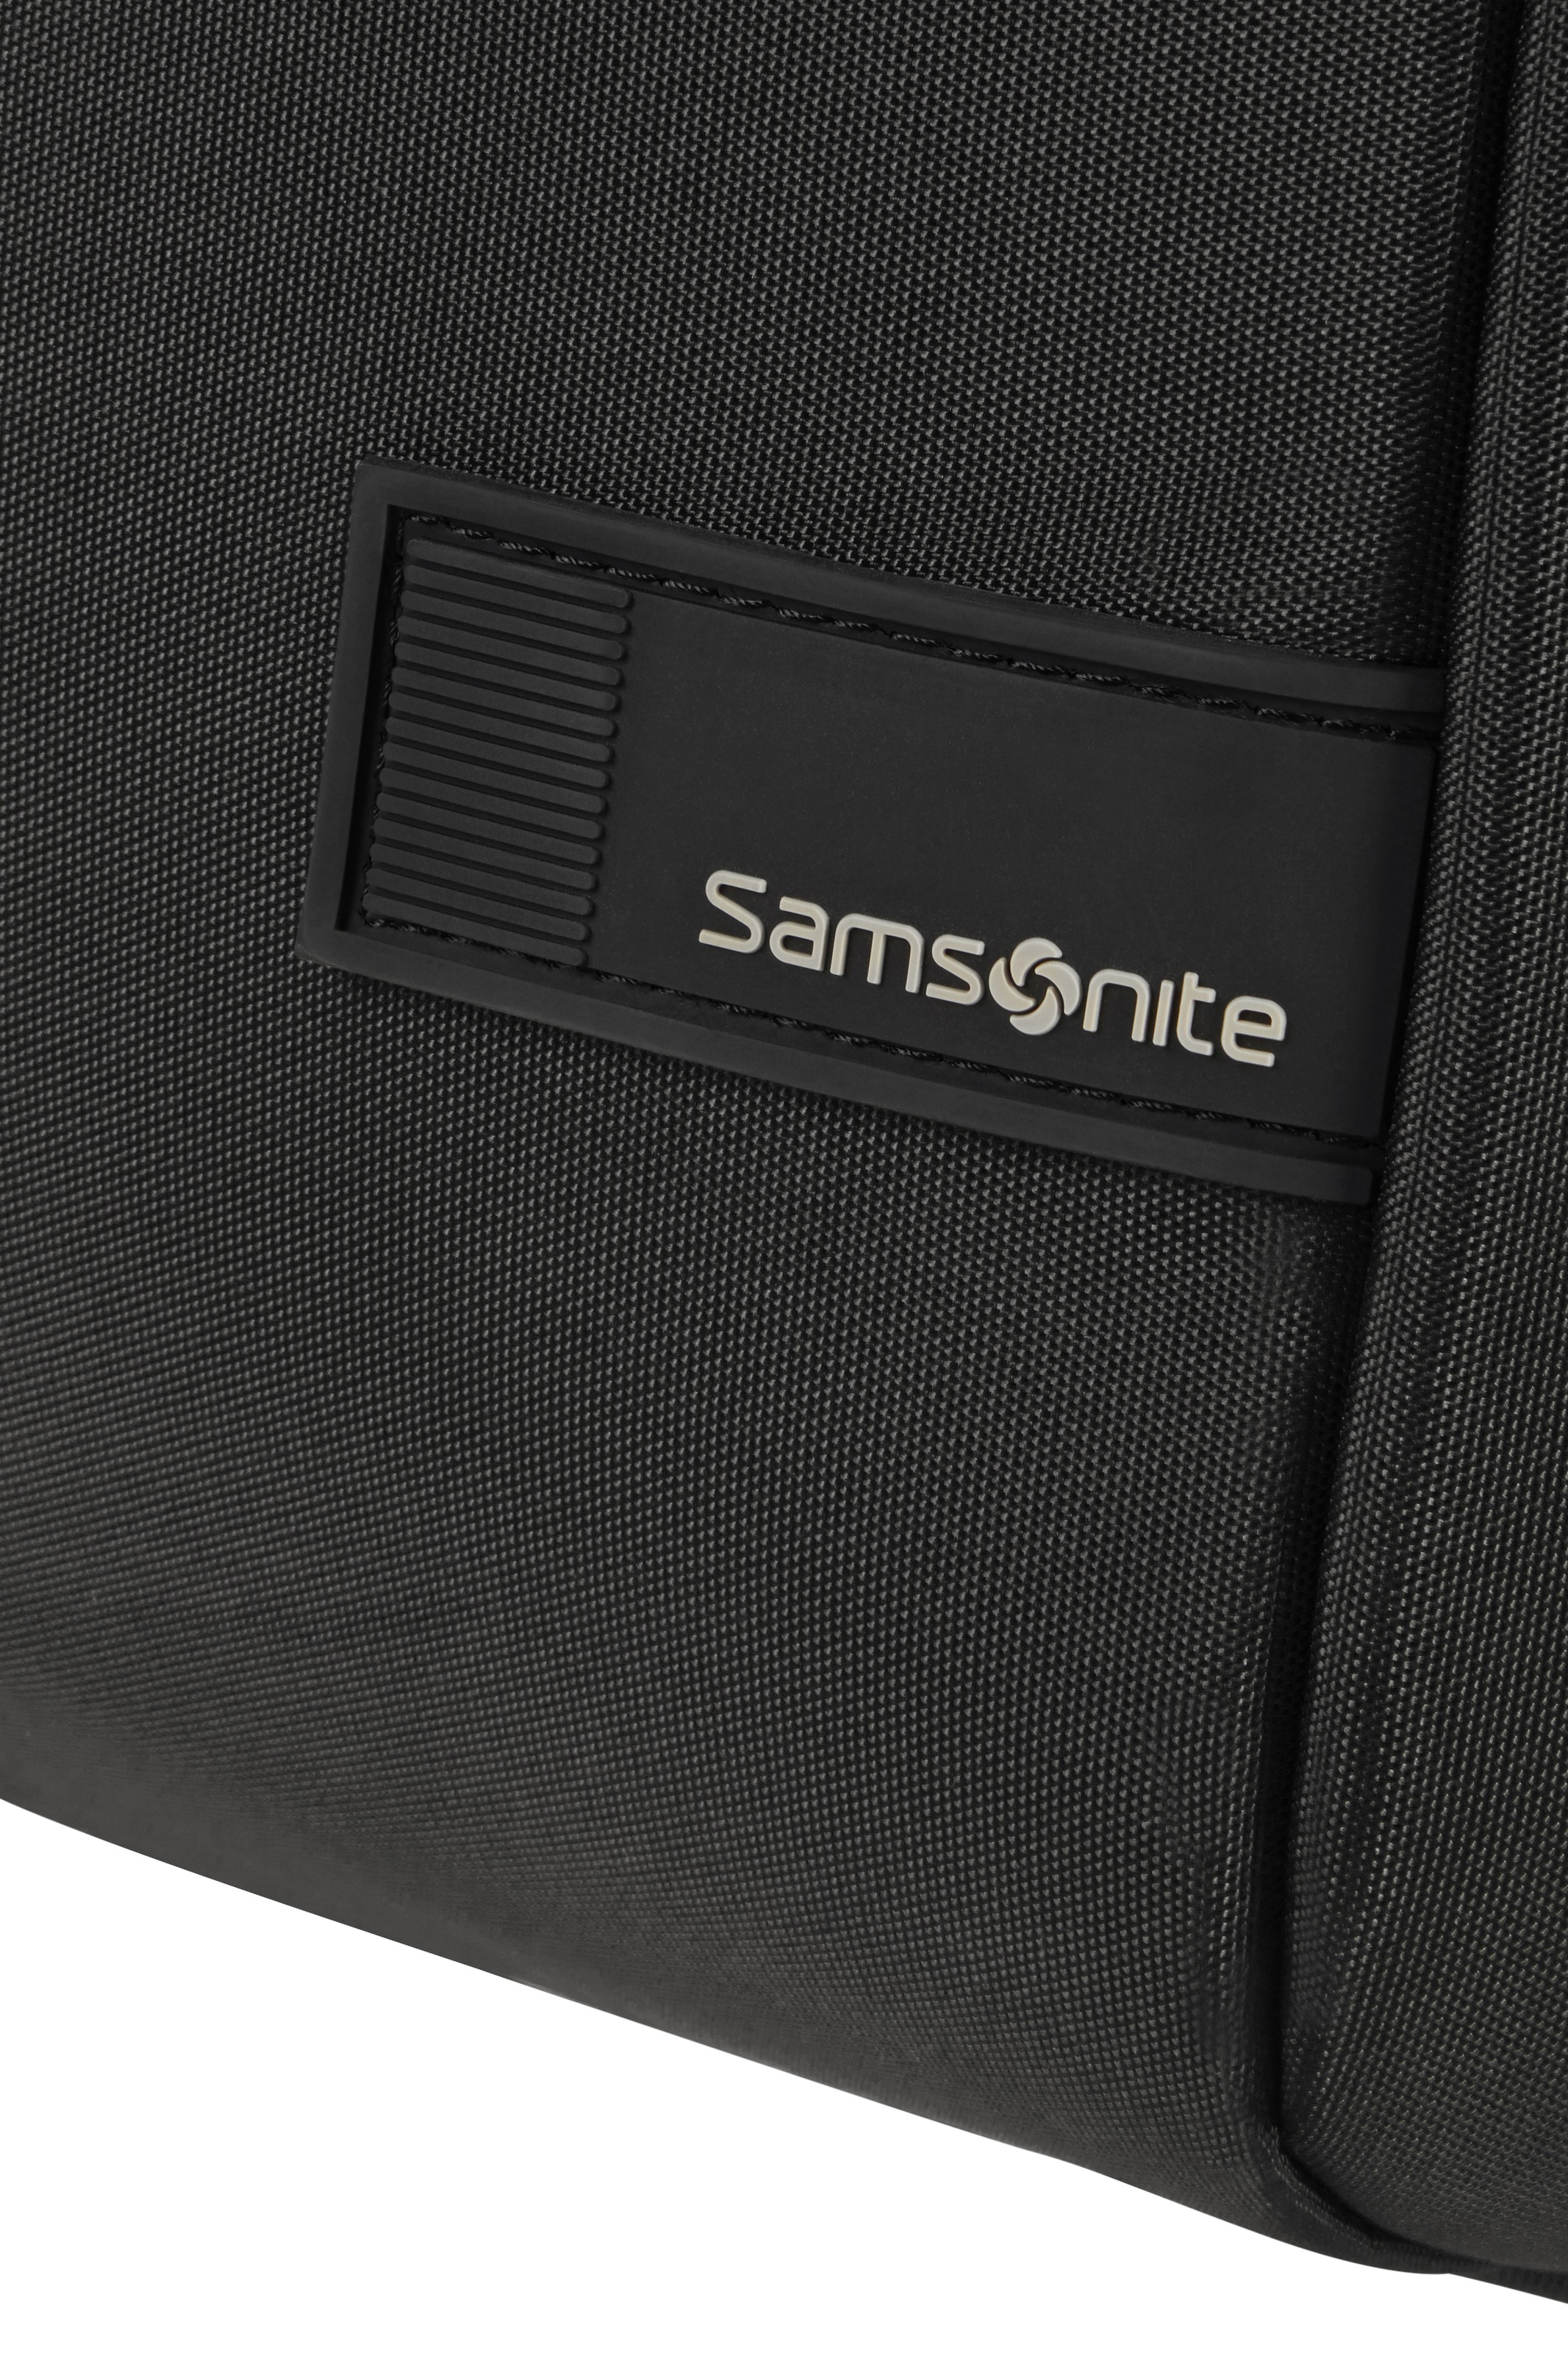 Samsonite Laptoprucksack »Litepoint«, reflektierende Details, Freizeitrucksack Schulrucksack USB-Schleuse 17,3 Zoll Laptopfach